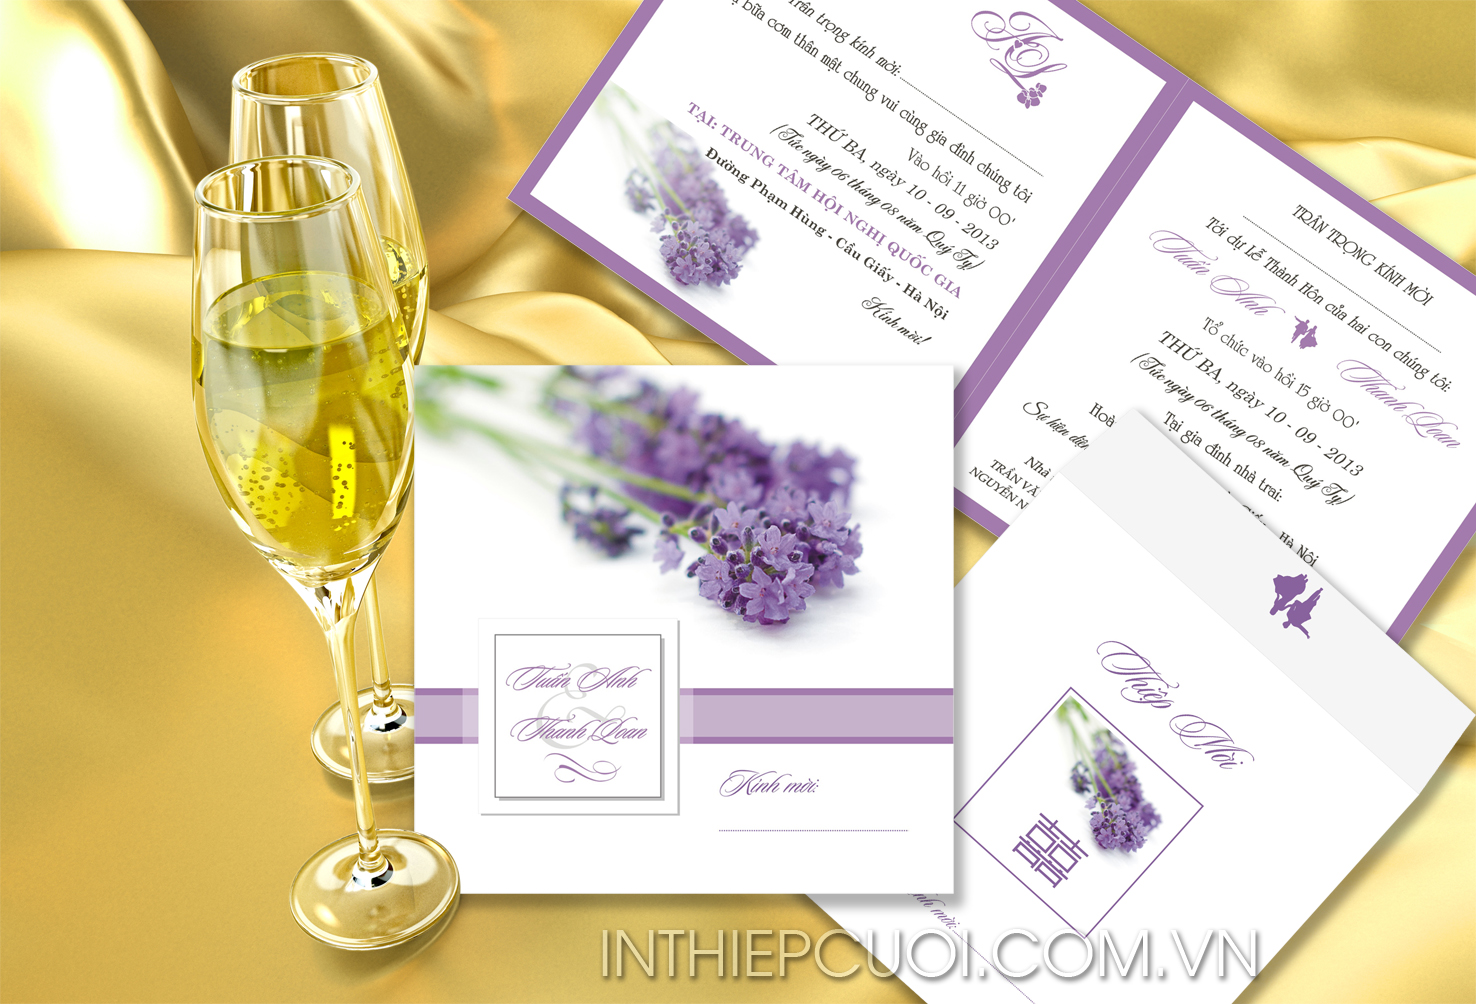 Thiệp cưới đẹp màu tím in hình hoa oải hương